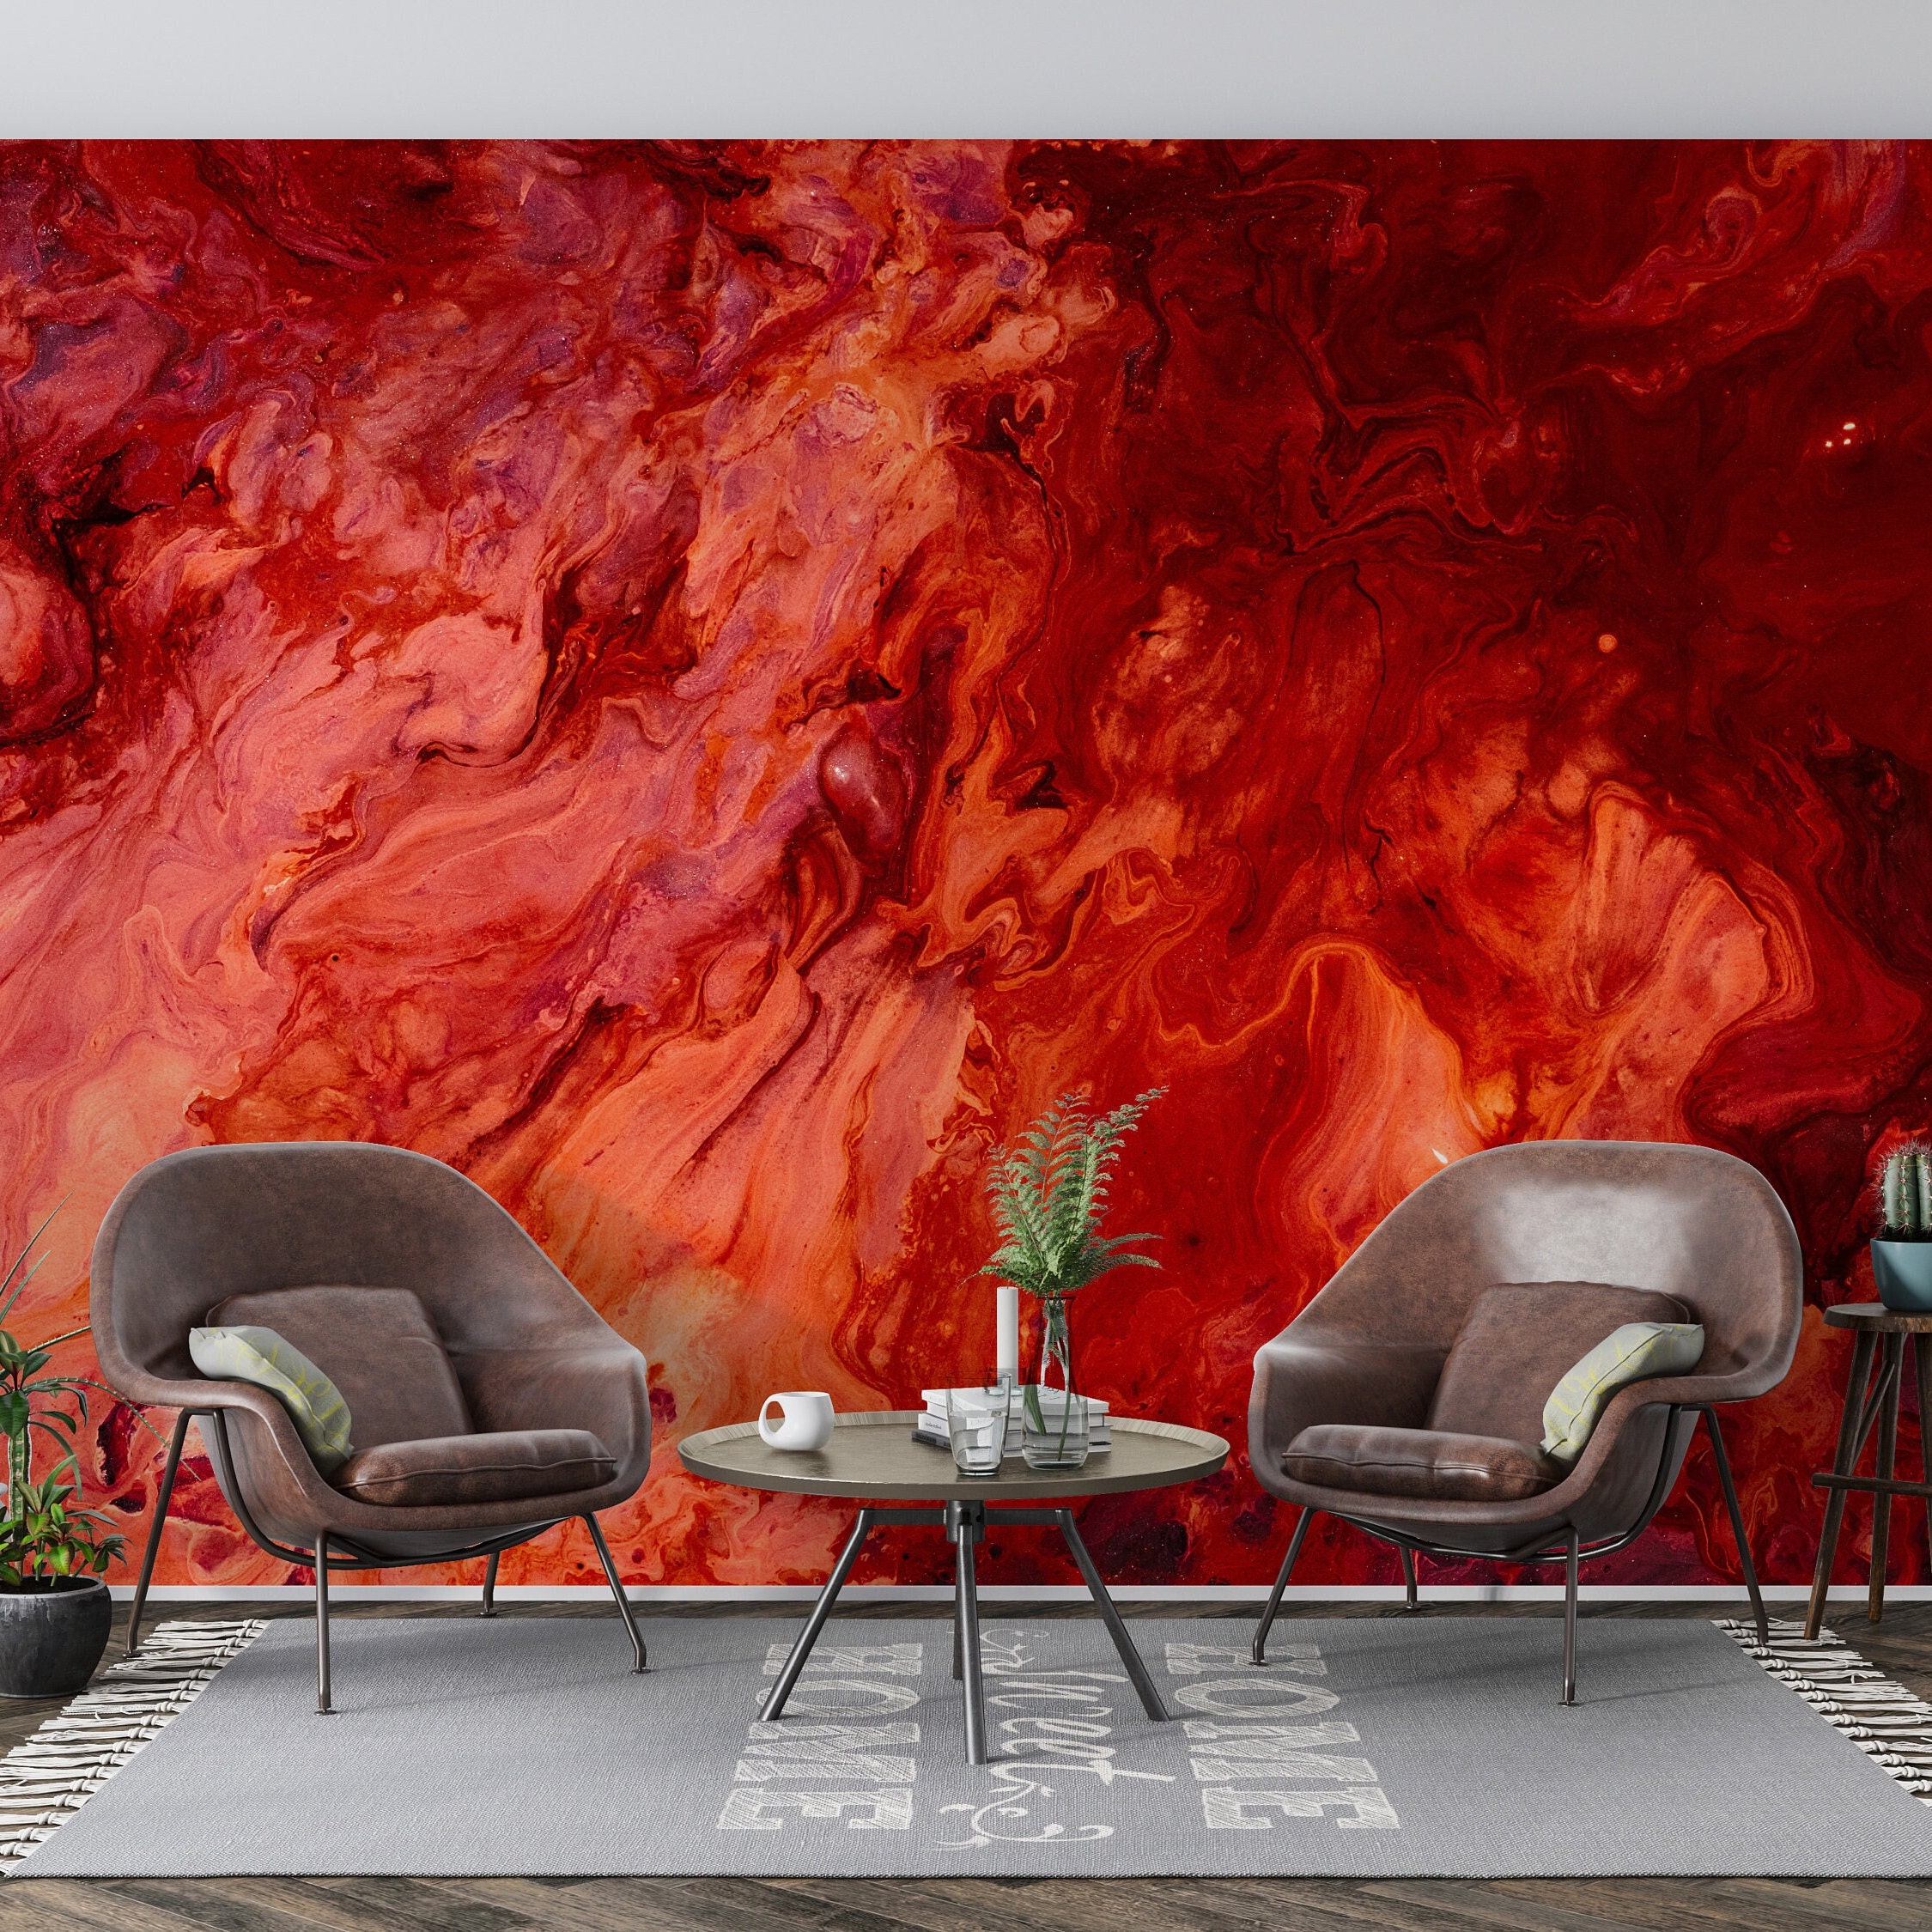  Mural de pared cerca de un sofá de terciopelo acolchado rojo  con botones tapizados rojos despegar y pegar papel pintado autoadhesivo  grande adhesivo de pared adhesivo de vinilo extraíble rollo de